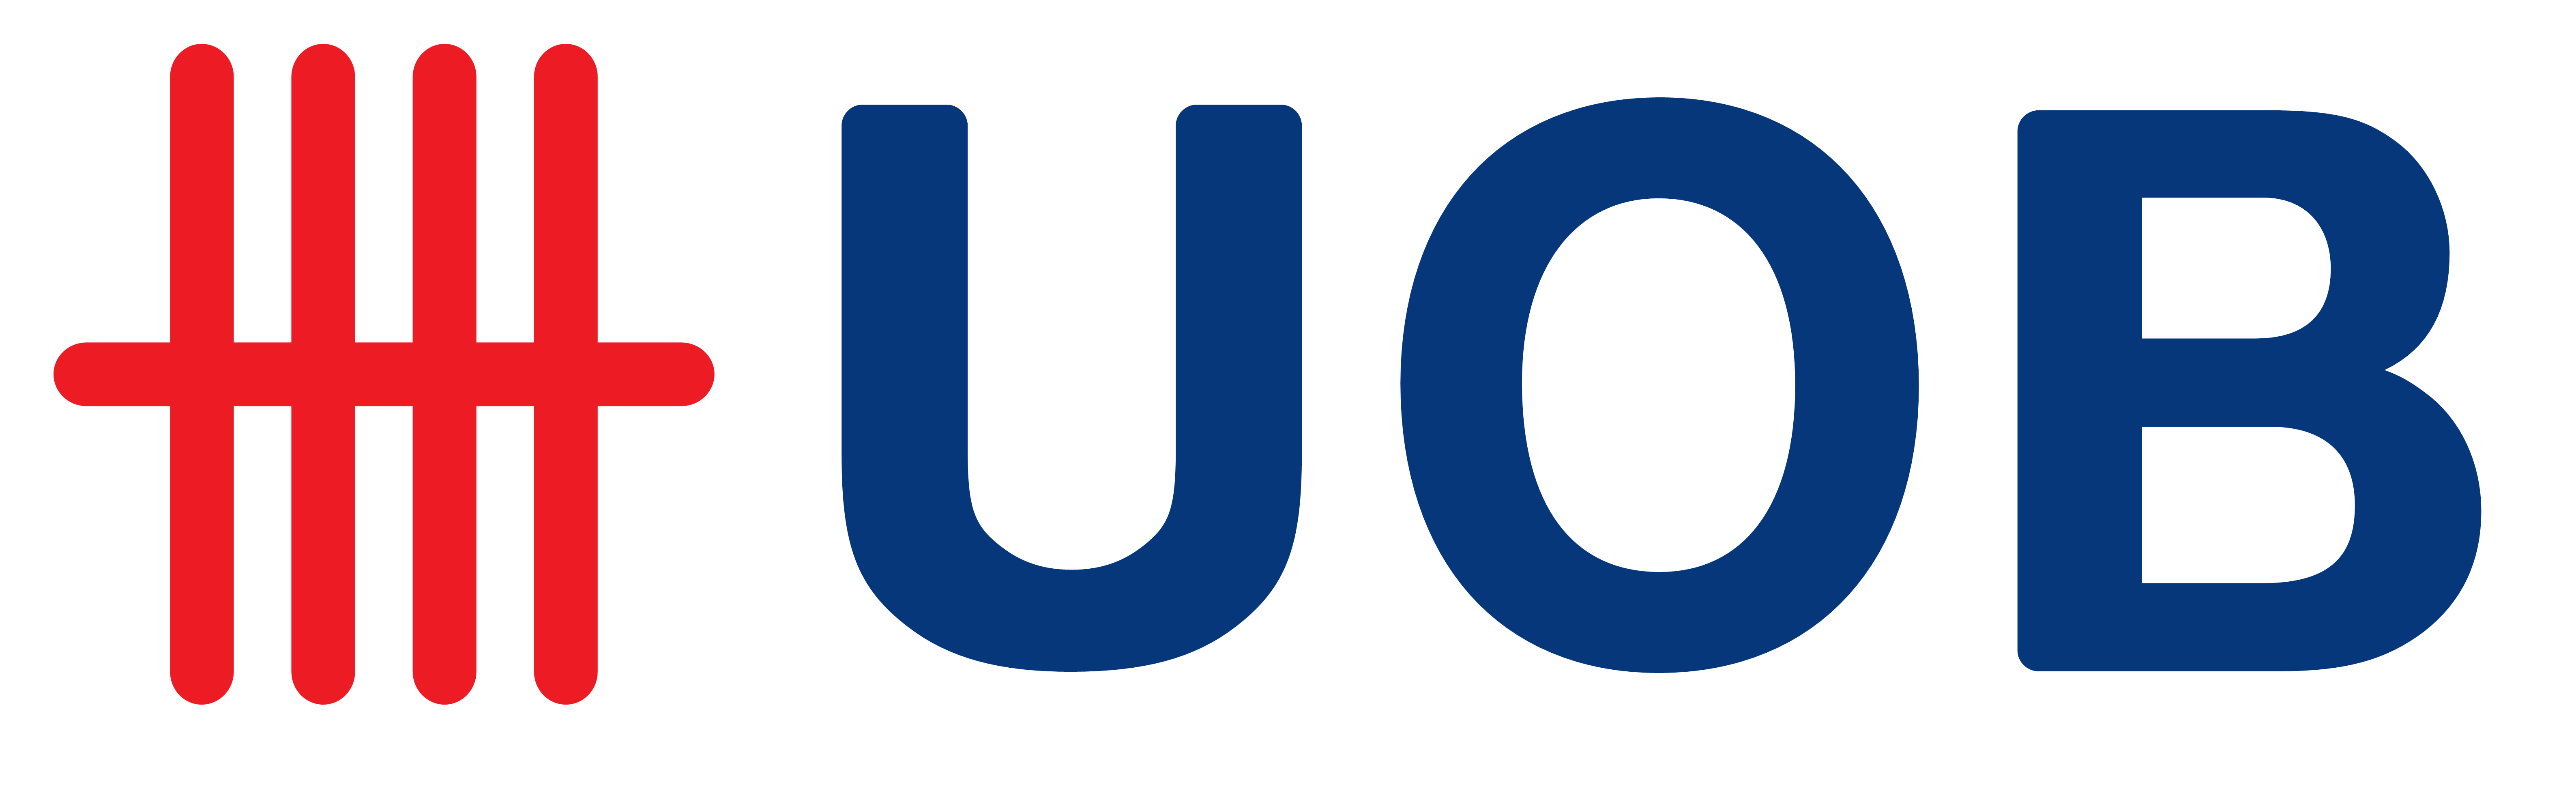 United Overseas Bank, UOB.